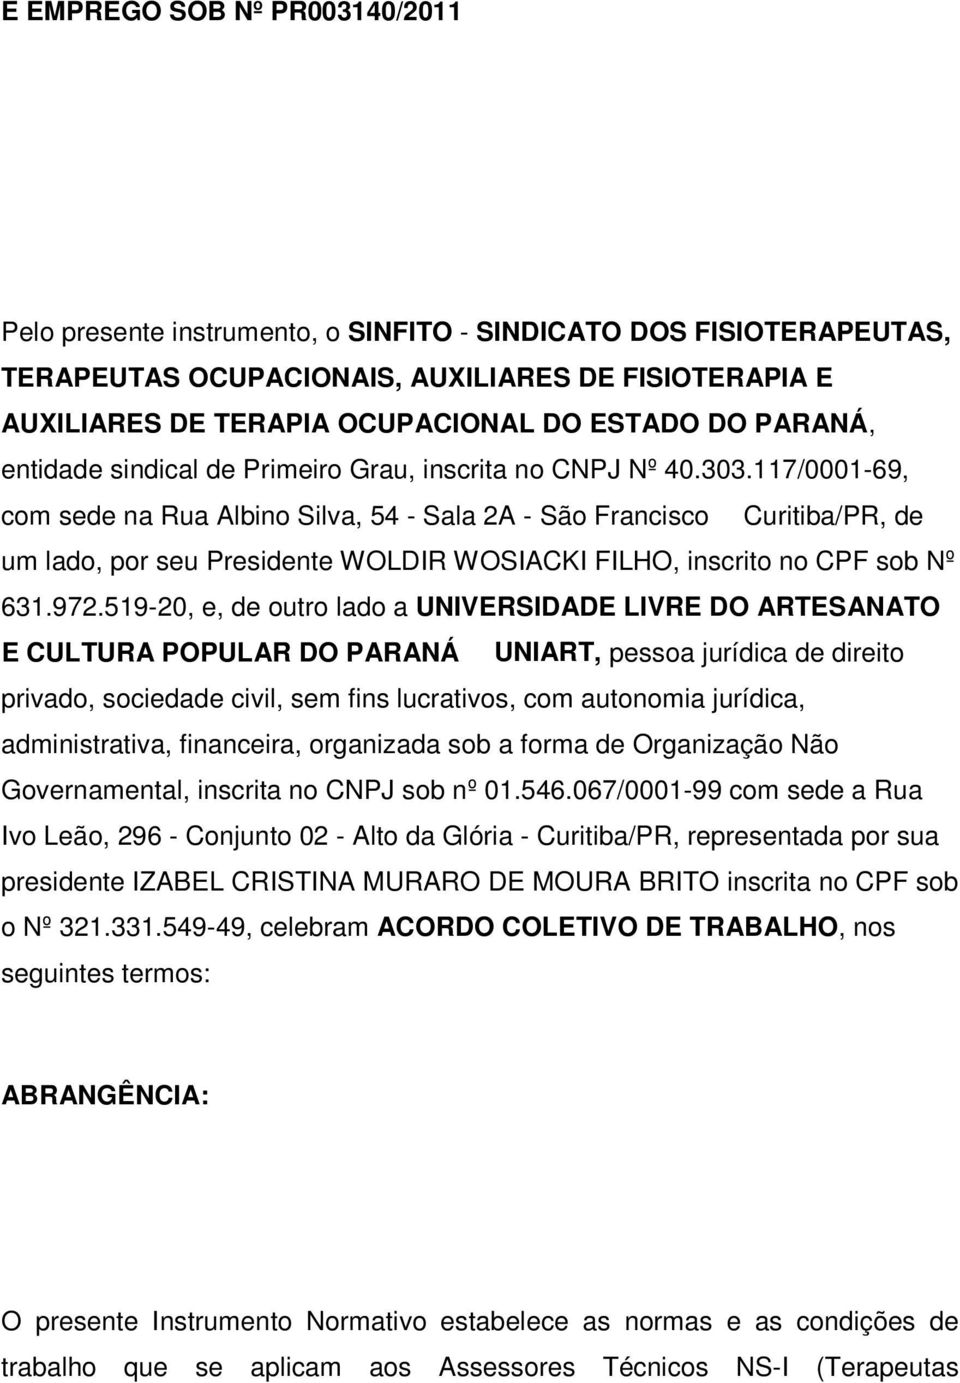 117/0001-69, com sede na Rua Albino Silva, 54 - Sala 2A - São Francisco Curitiba/PR, de um lado, por seu Presidente WOLDIR WOSIACKI FILHO, inscrito no CPF sob Nº 631.972.